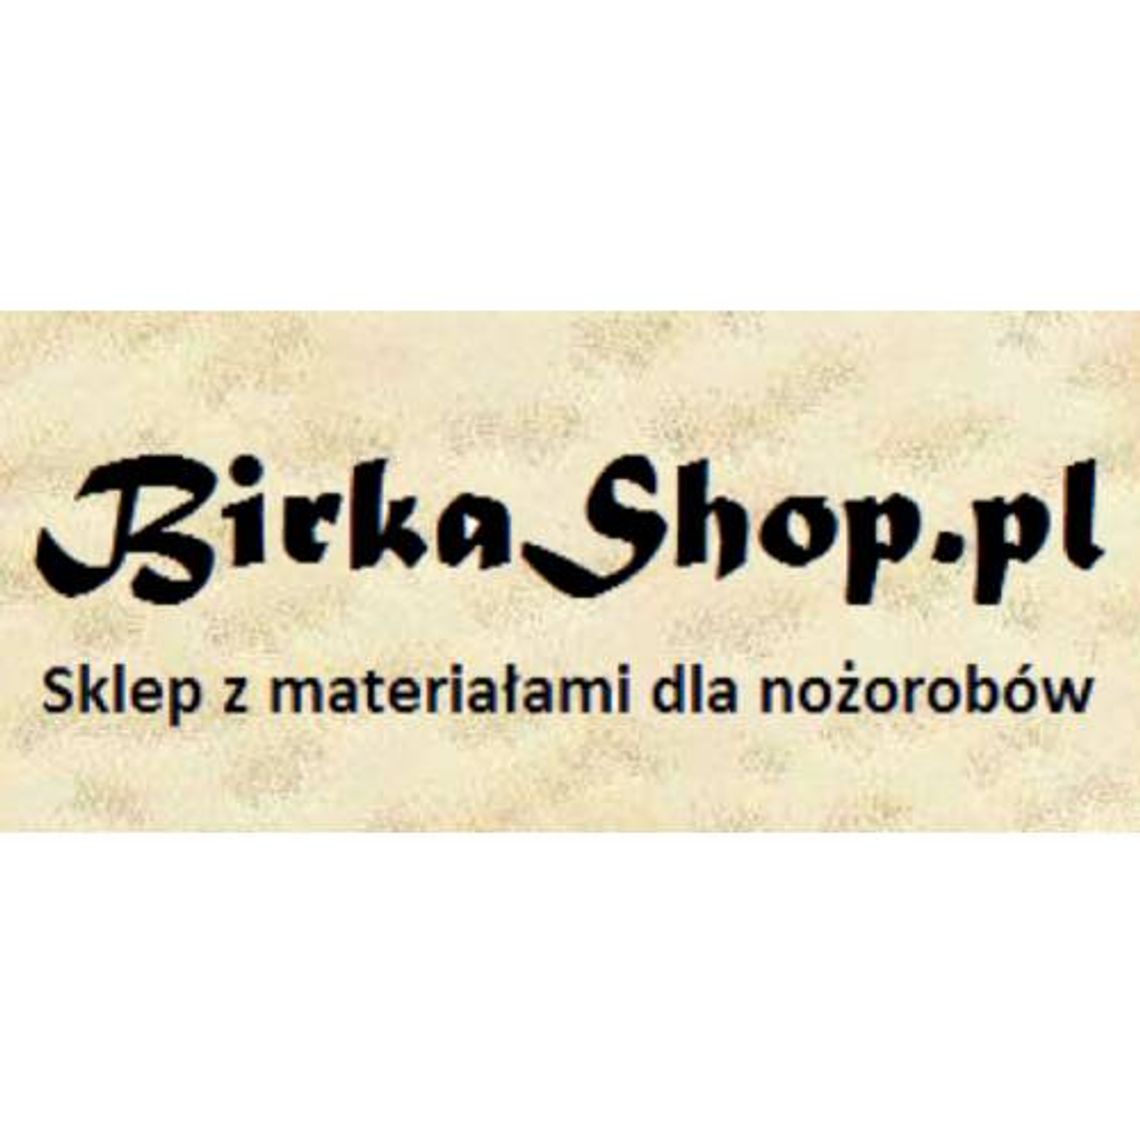 Birkashop - sklep z materiałami dla nożorobów